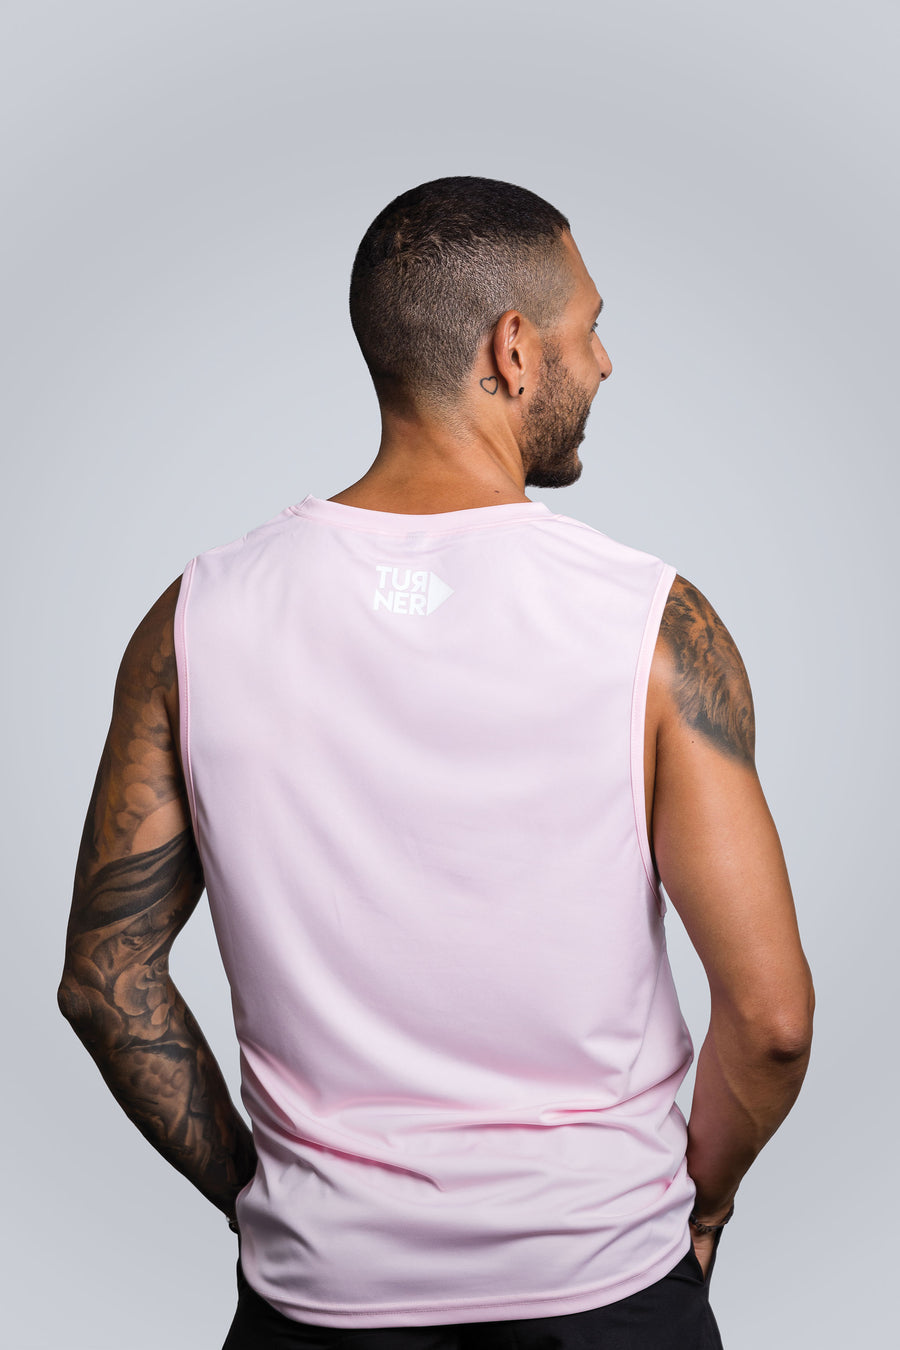 Men's FreedomFit Tank Top - Pink